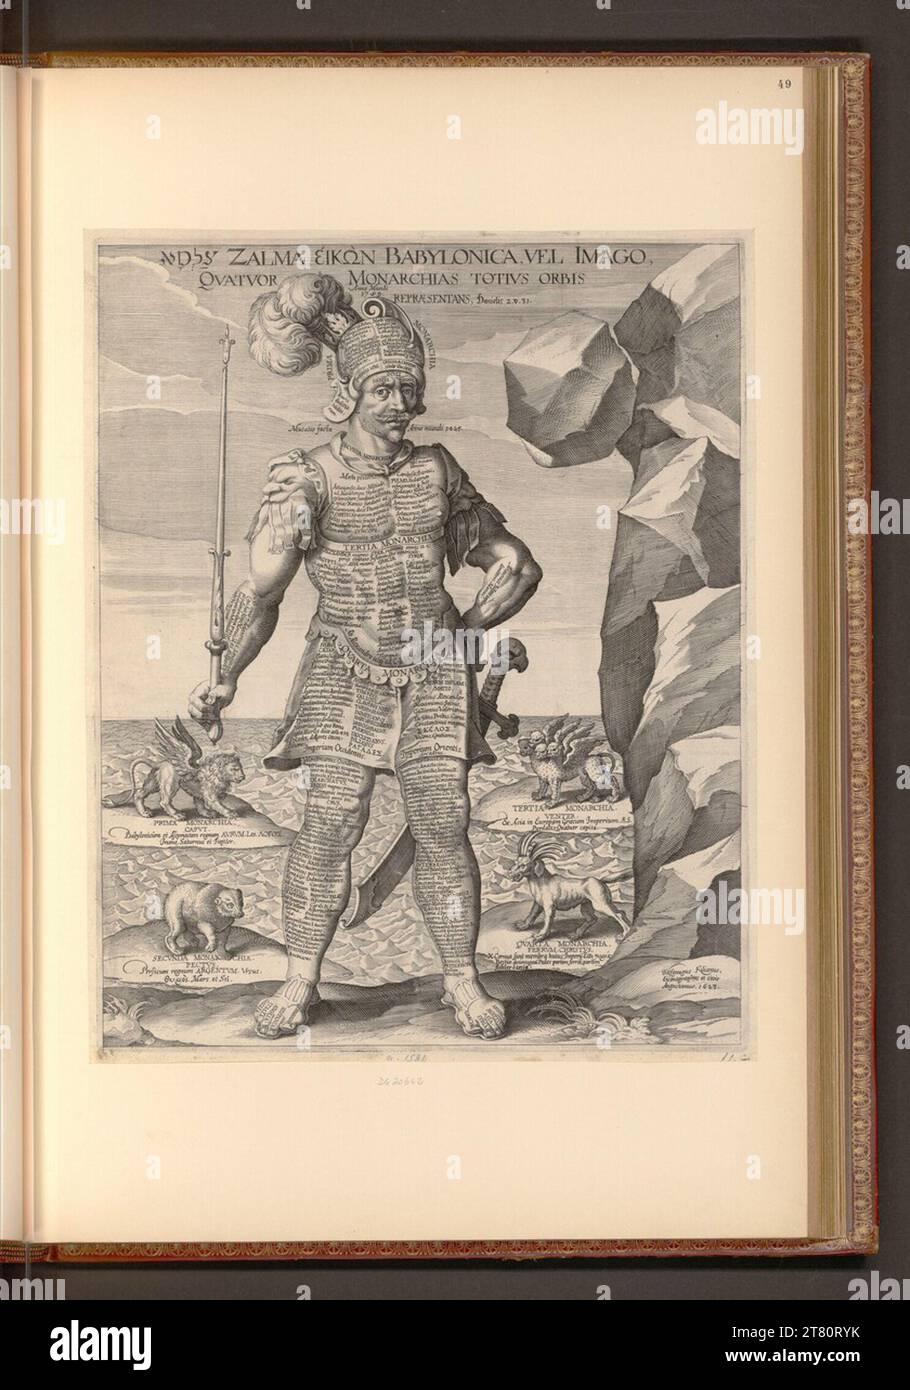 Wolfgang Kilian Zalma, Eikon di Babylonica, o l'immagine, le quattro monarchie di tutto il mondo che rappresentano. Incisione in rame, incisione incisione a goccia cucitura a lastra di rame 1623 , 1623 Foto Stock